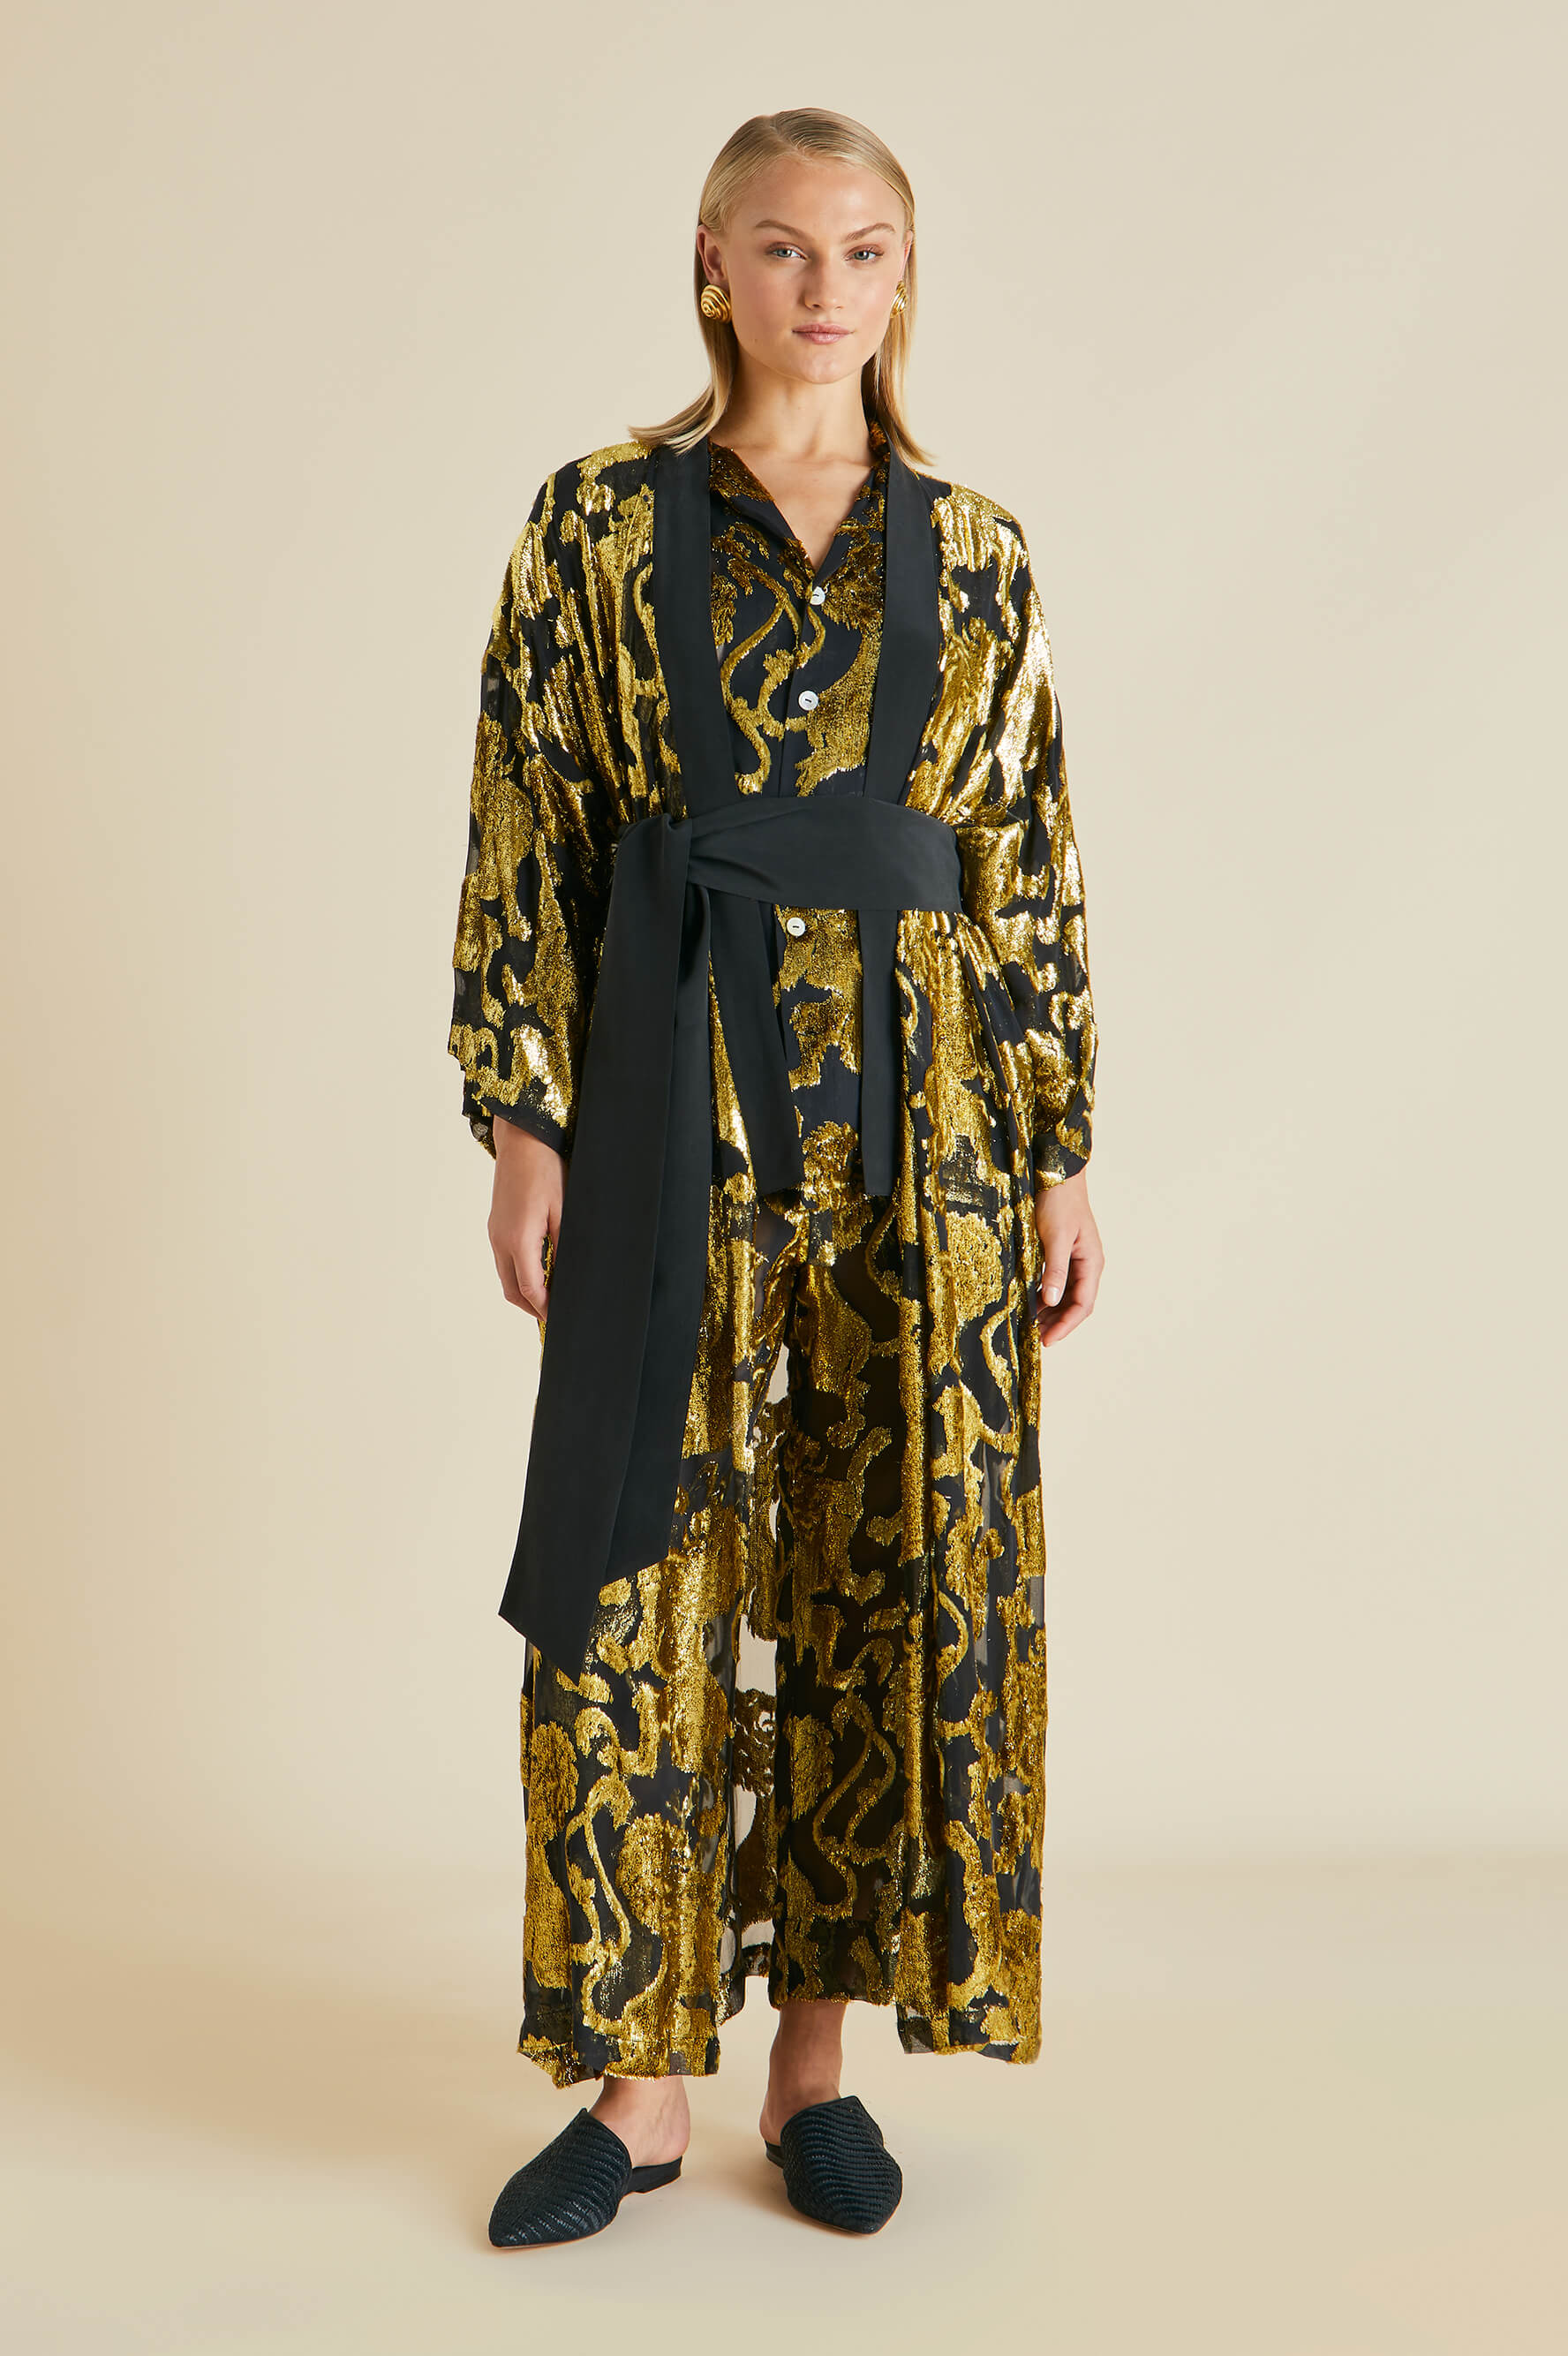 Queenie Noble Gold Lion Robe in Velvet Lurex